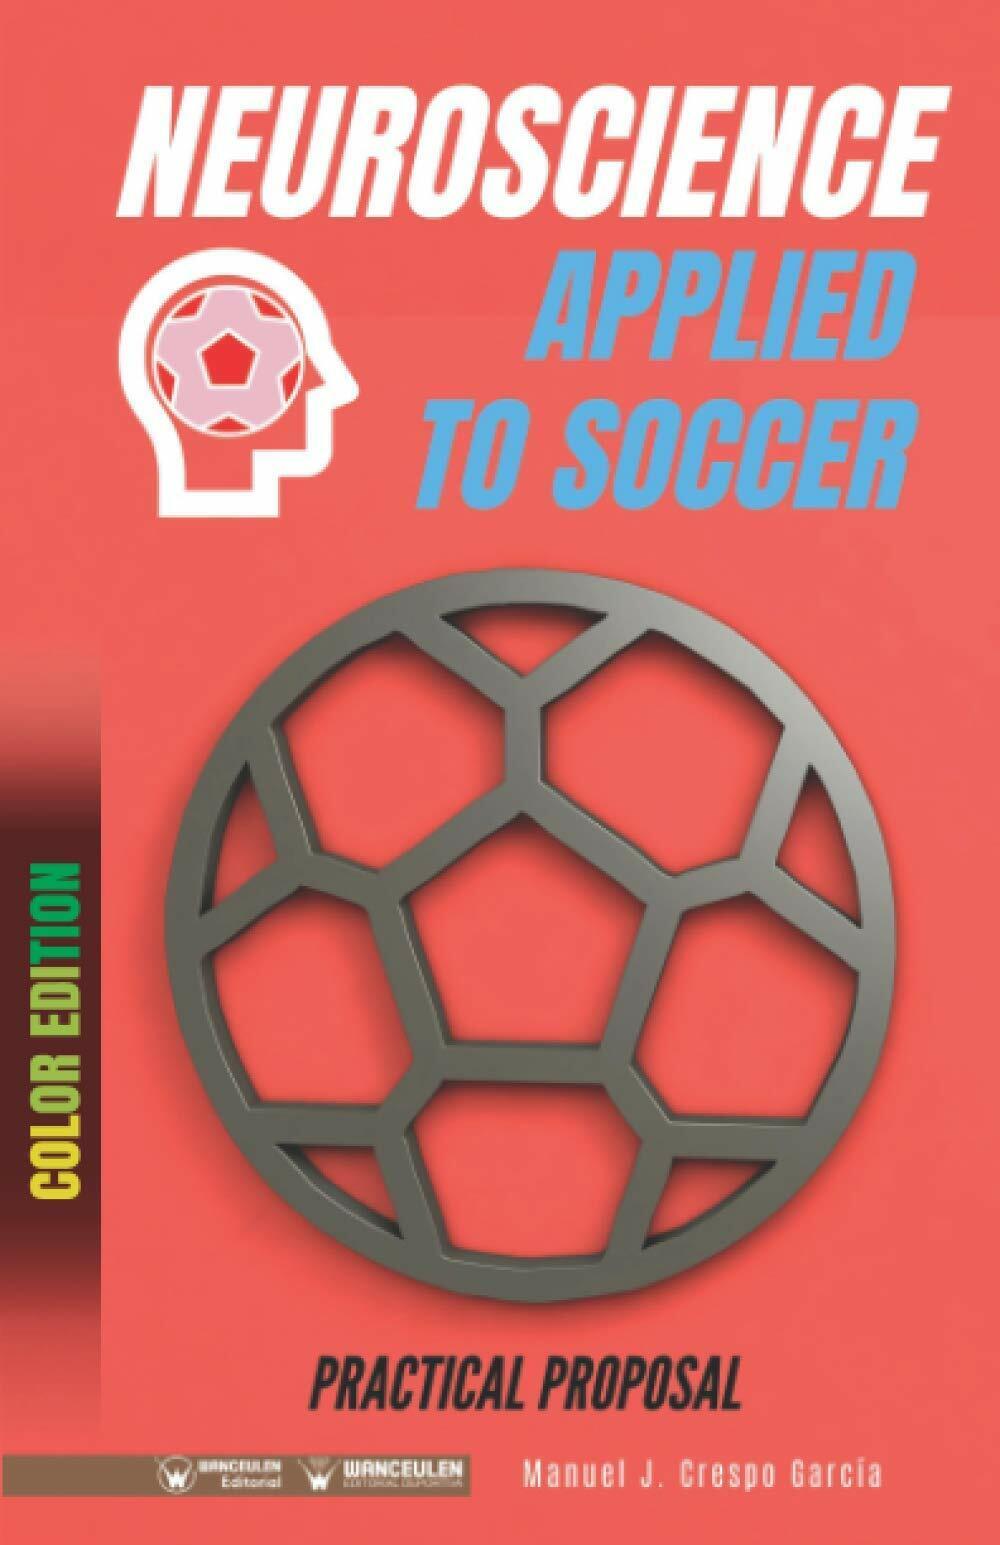 Neuroscience applied to soccer - Manuel J. Crespo Garc?a - Wanceulen, 2020